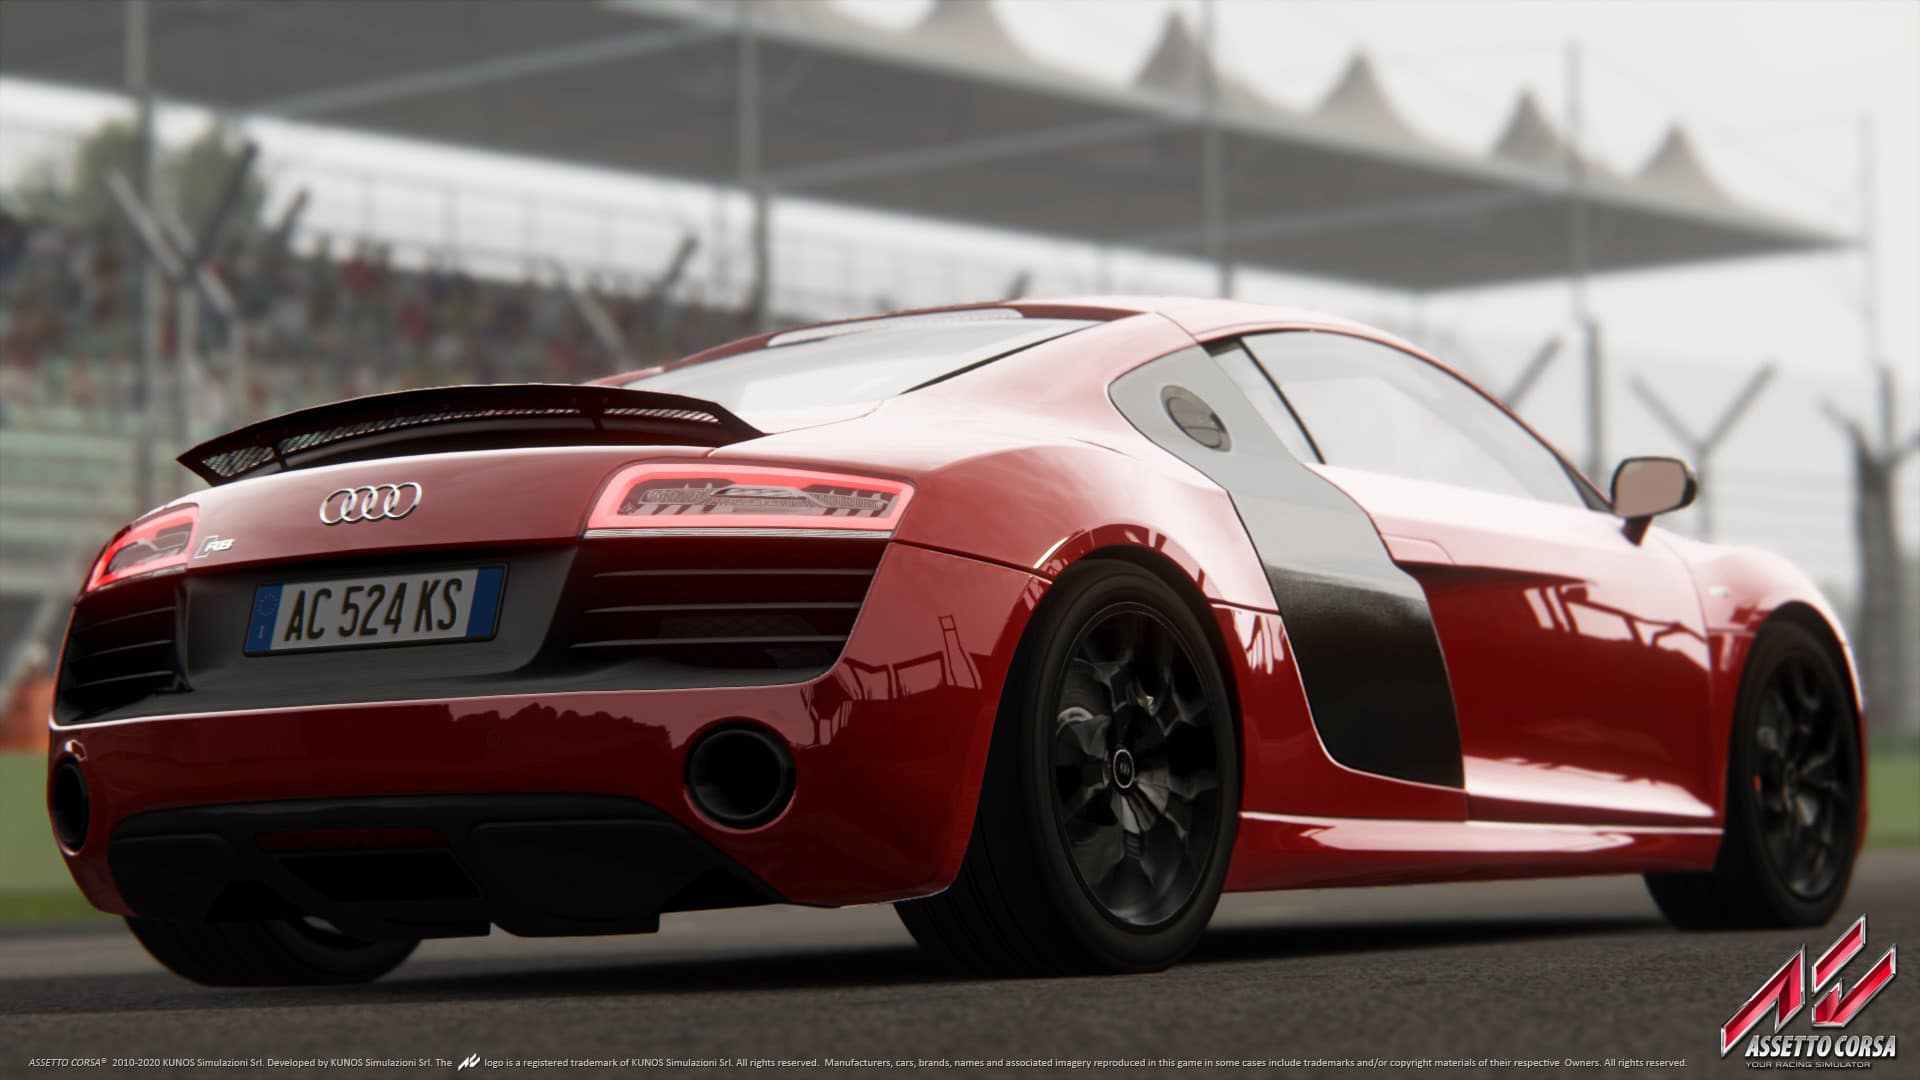 Jogos: 6 maiores lançamentos da história em jogos de personalizar carros